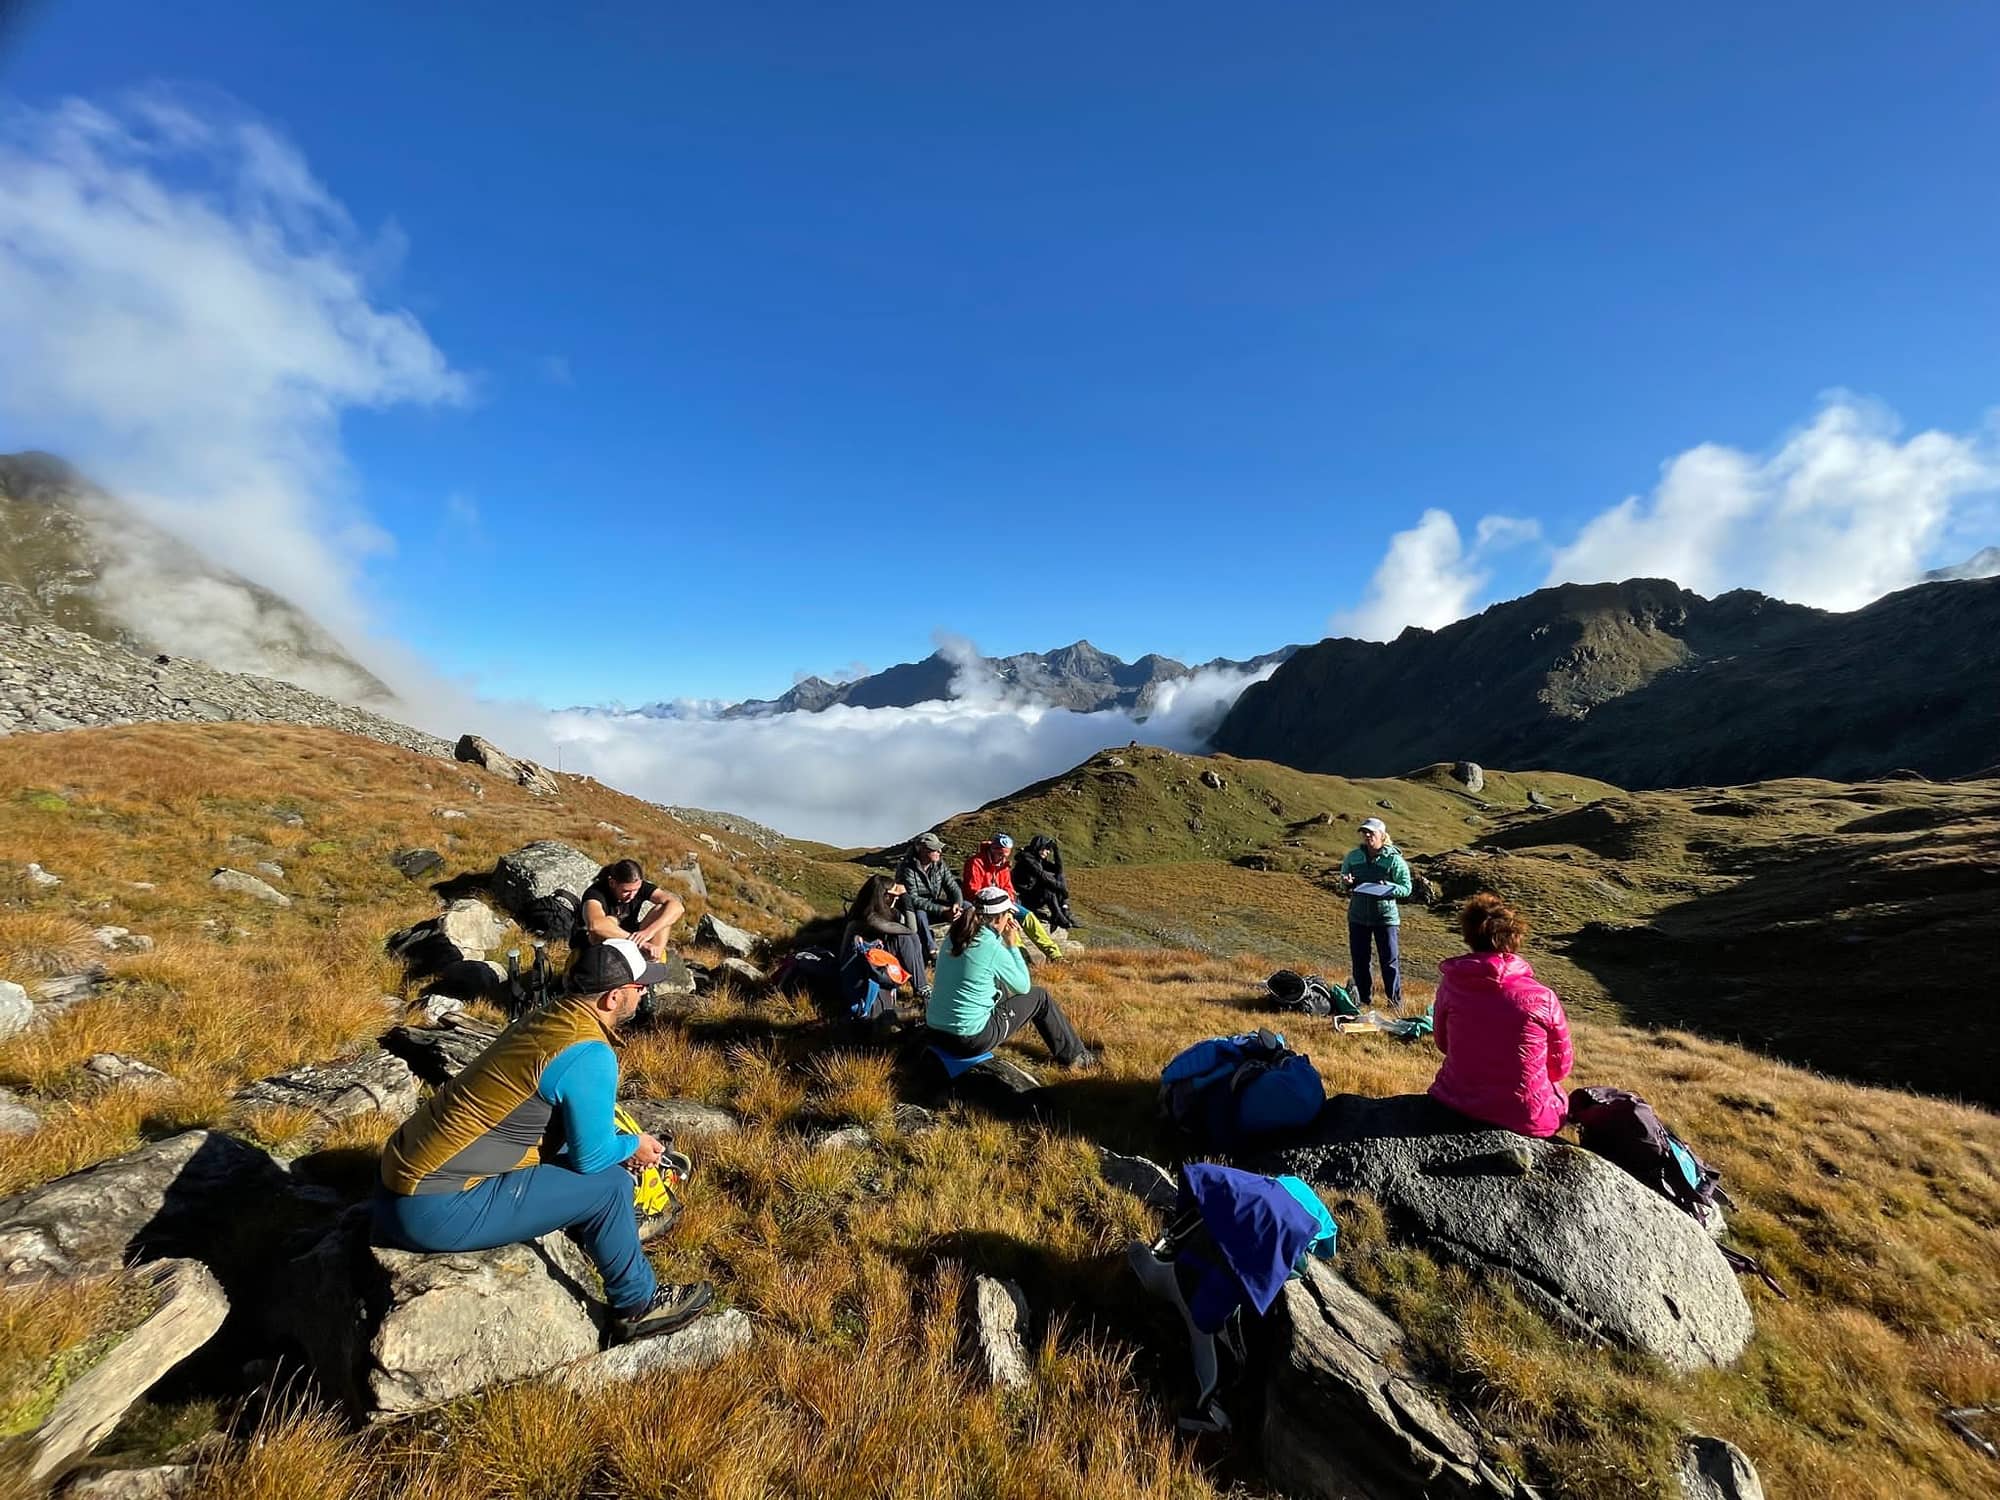 Groupe de personnes assises sur des rochers pendant une randonnée en montagne